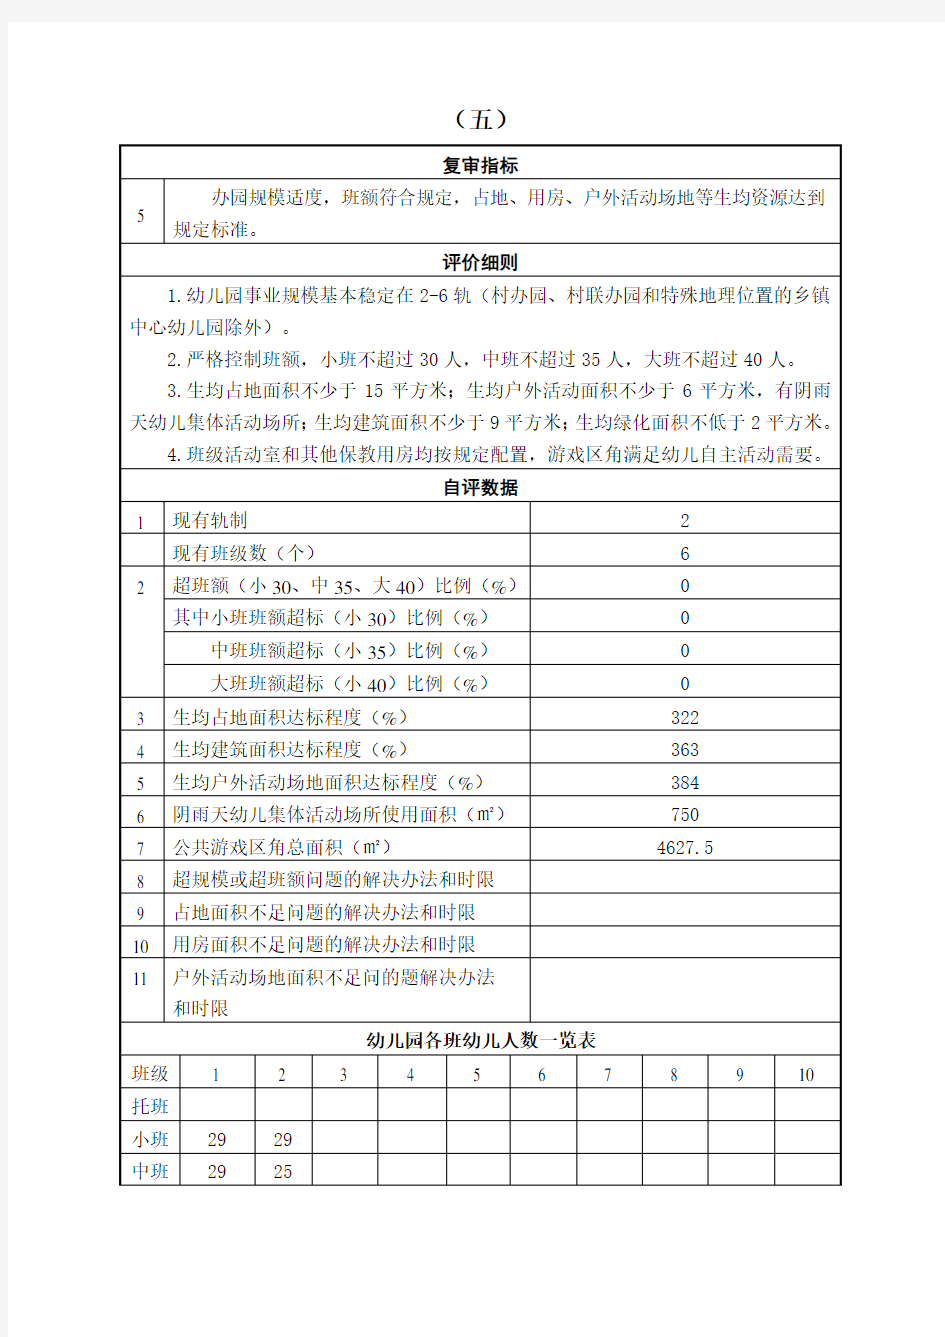 江苏省优质园复审指标分项自评概述第五项指标